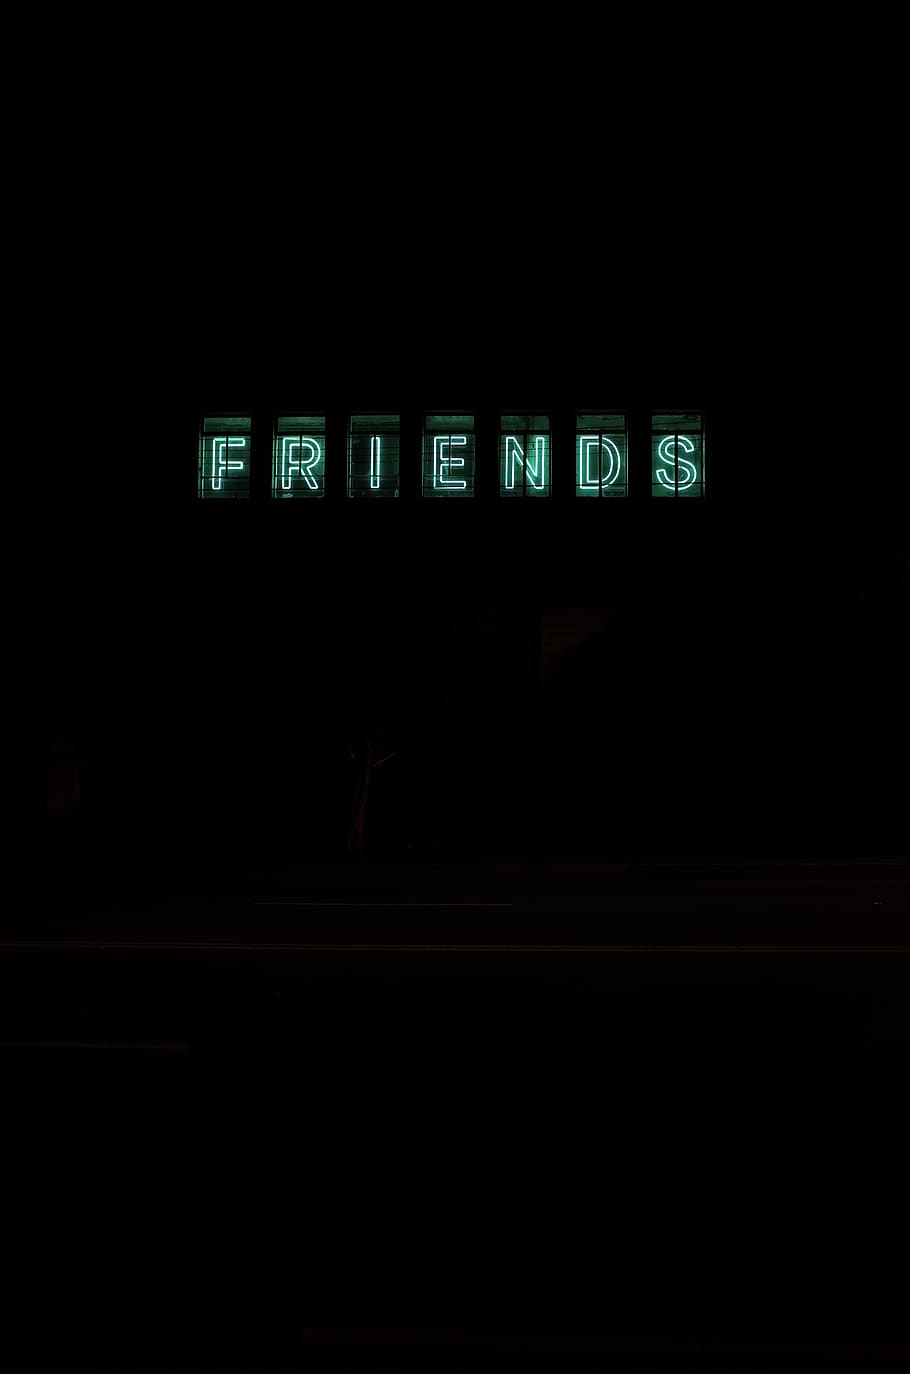 Green Friends Text, Black Background, Dark, Design, - Friends Black Background - HD Wallpaper 